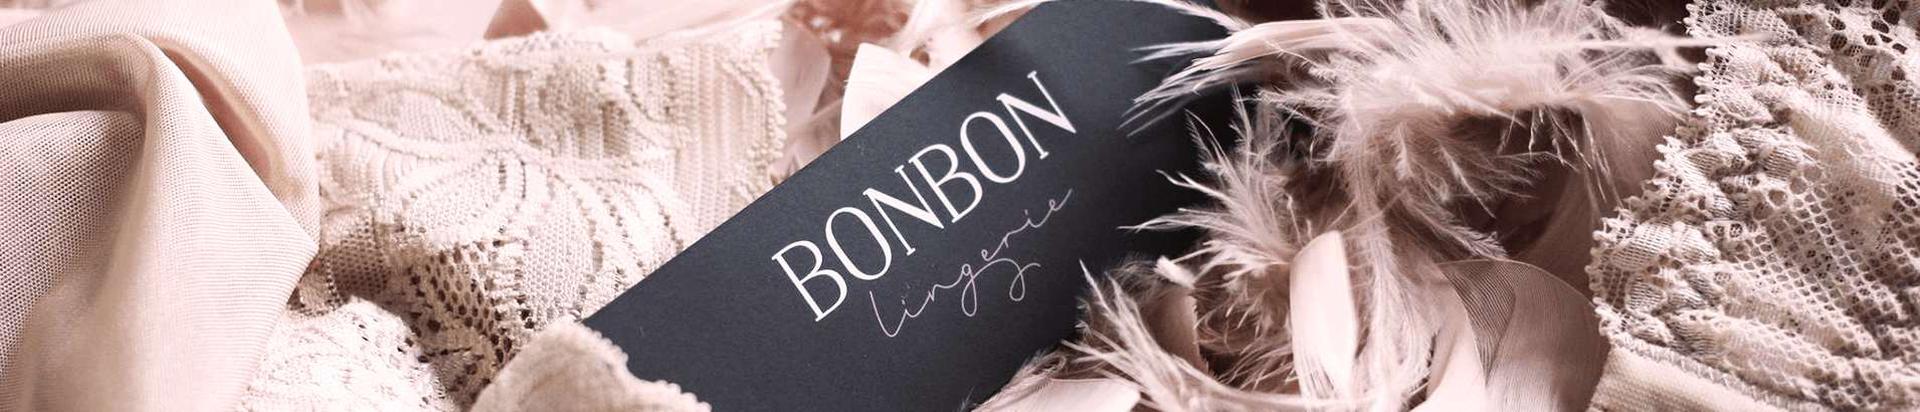 Sisene BonBoni salapärasesse maailma ja avasta meie eksklusiivsed rinnahoidjad, püksikud, bodid, öösärgid ning hommikumantlid